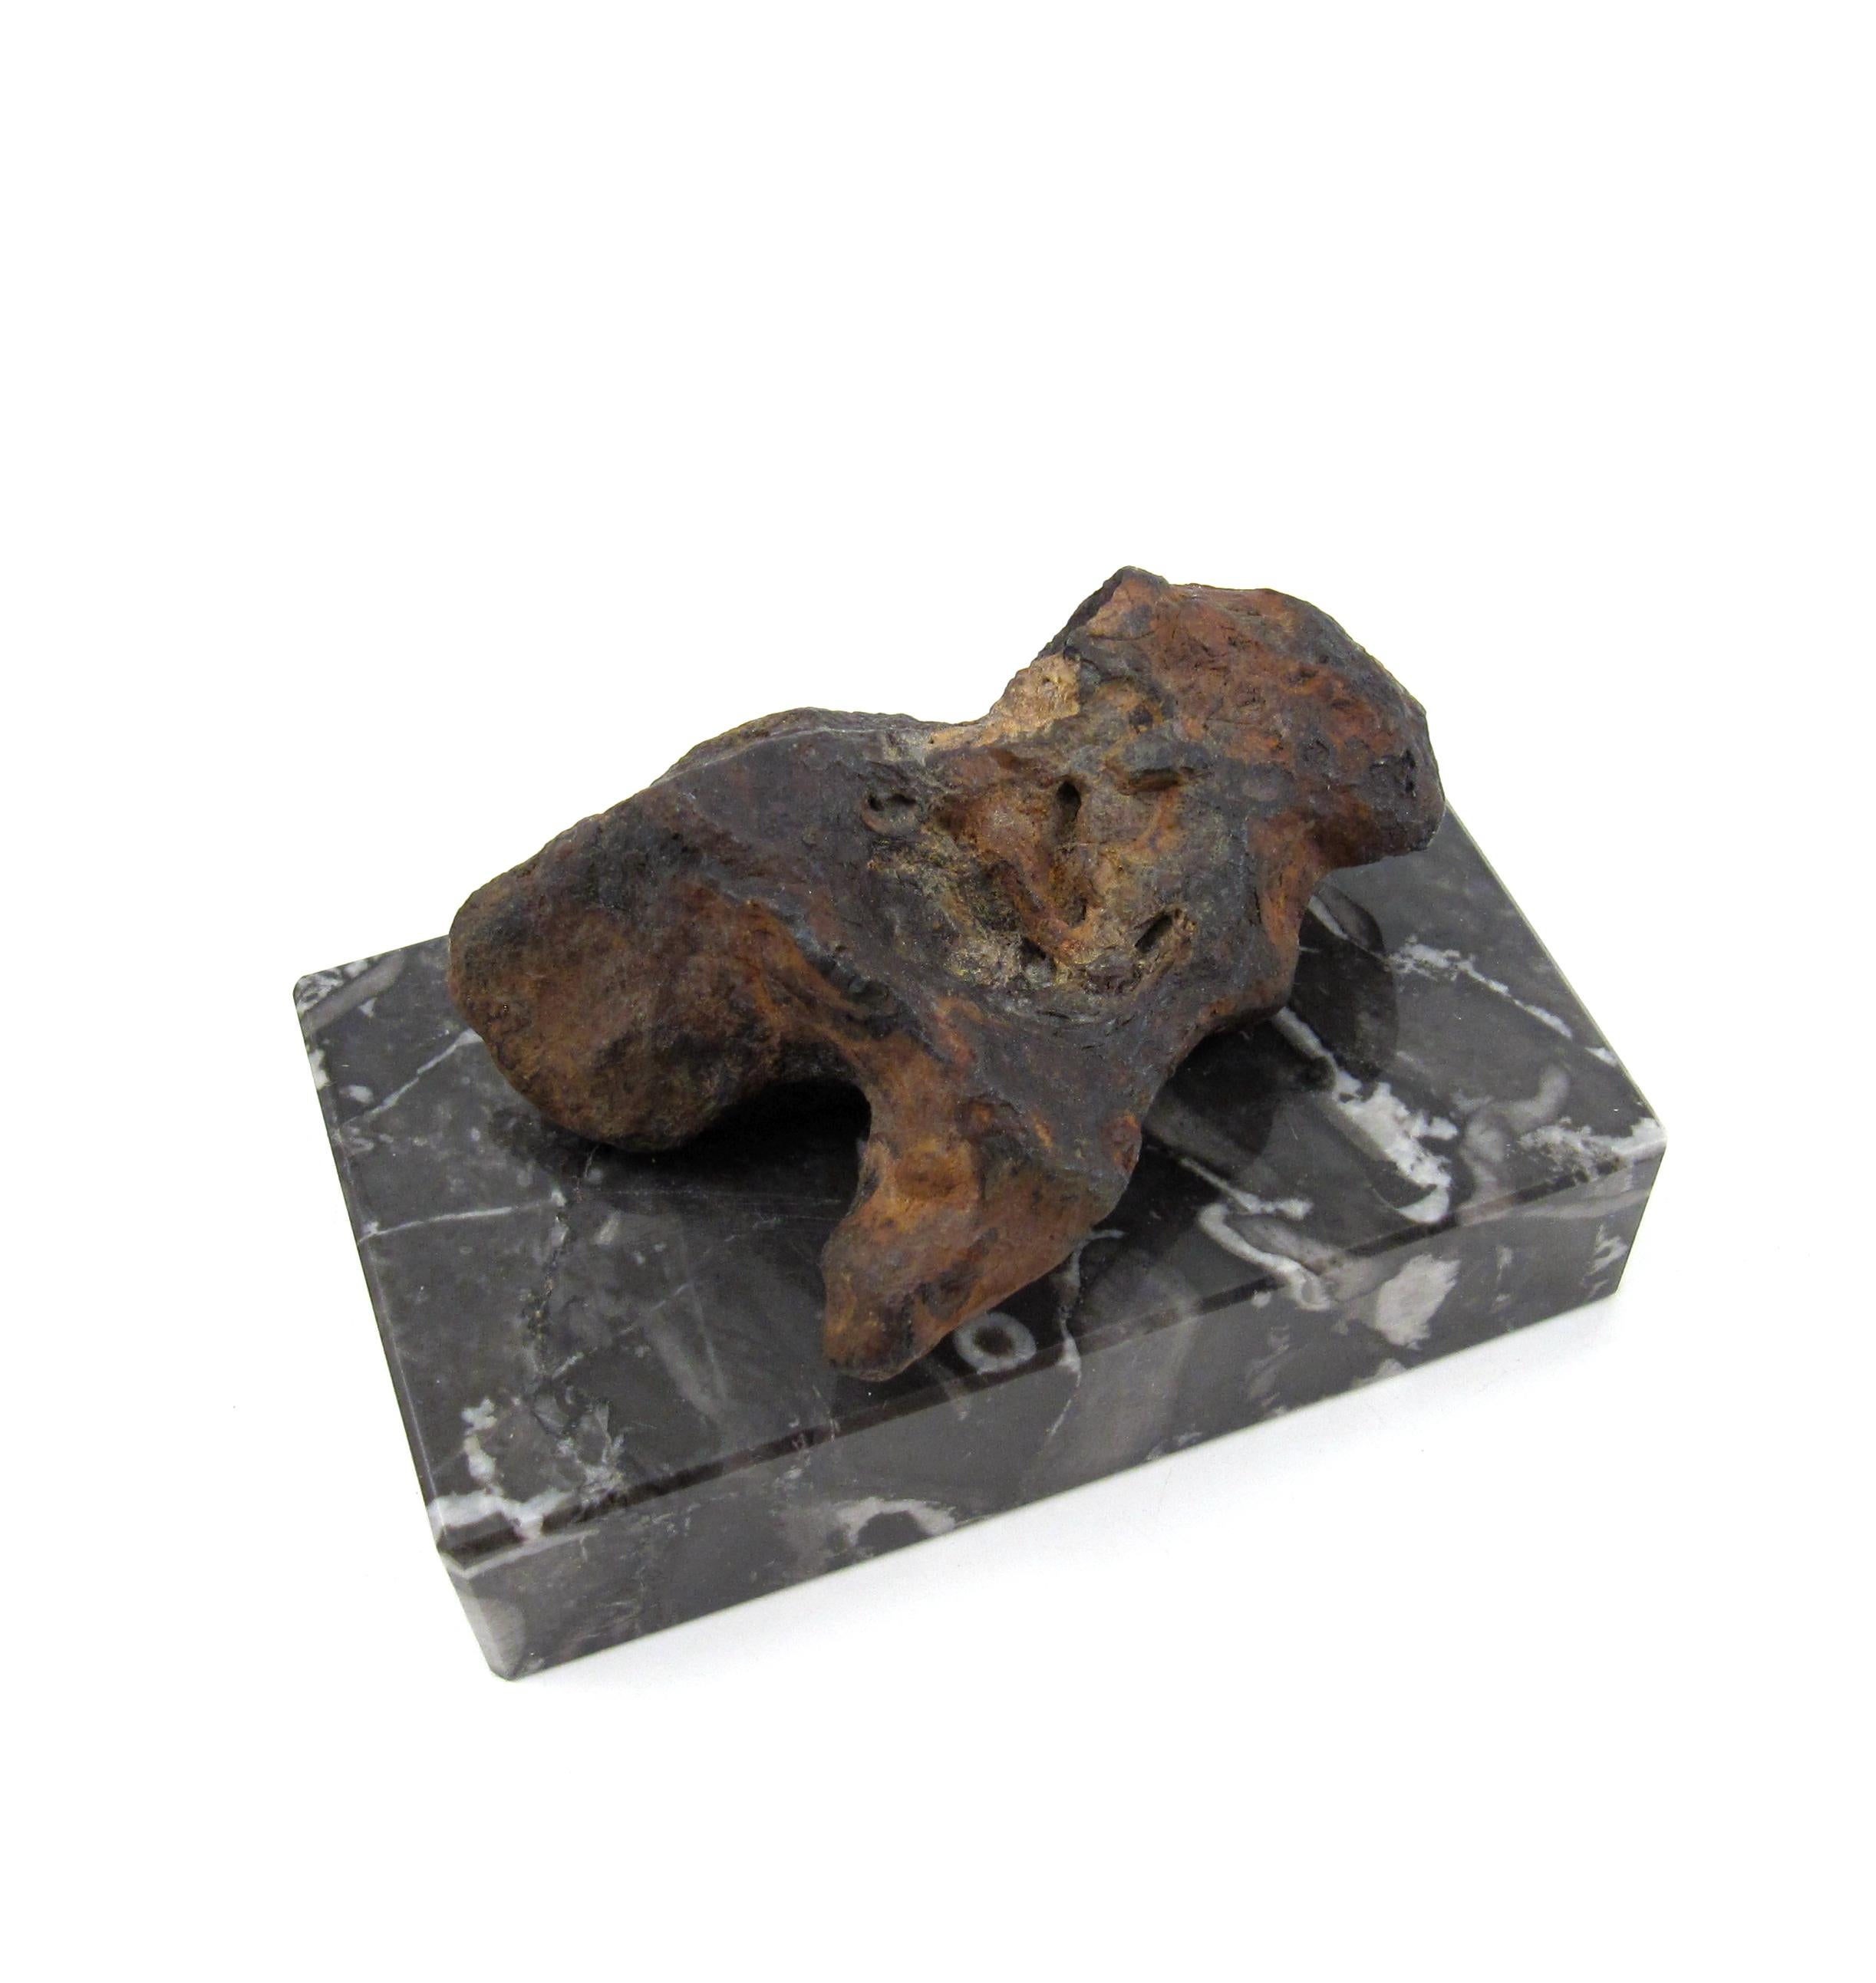 Eine von der Natur geformte Eisenskulptur

Der skulpturale Meteorit wird auf einem polierten, schwarz-weiß geflammten Marmorblock präsentiert und von einem starken Magneten gehalten. Das Exemplar kann je nach Wunsch des Besitzers entfernt oder